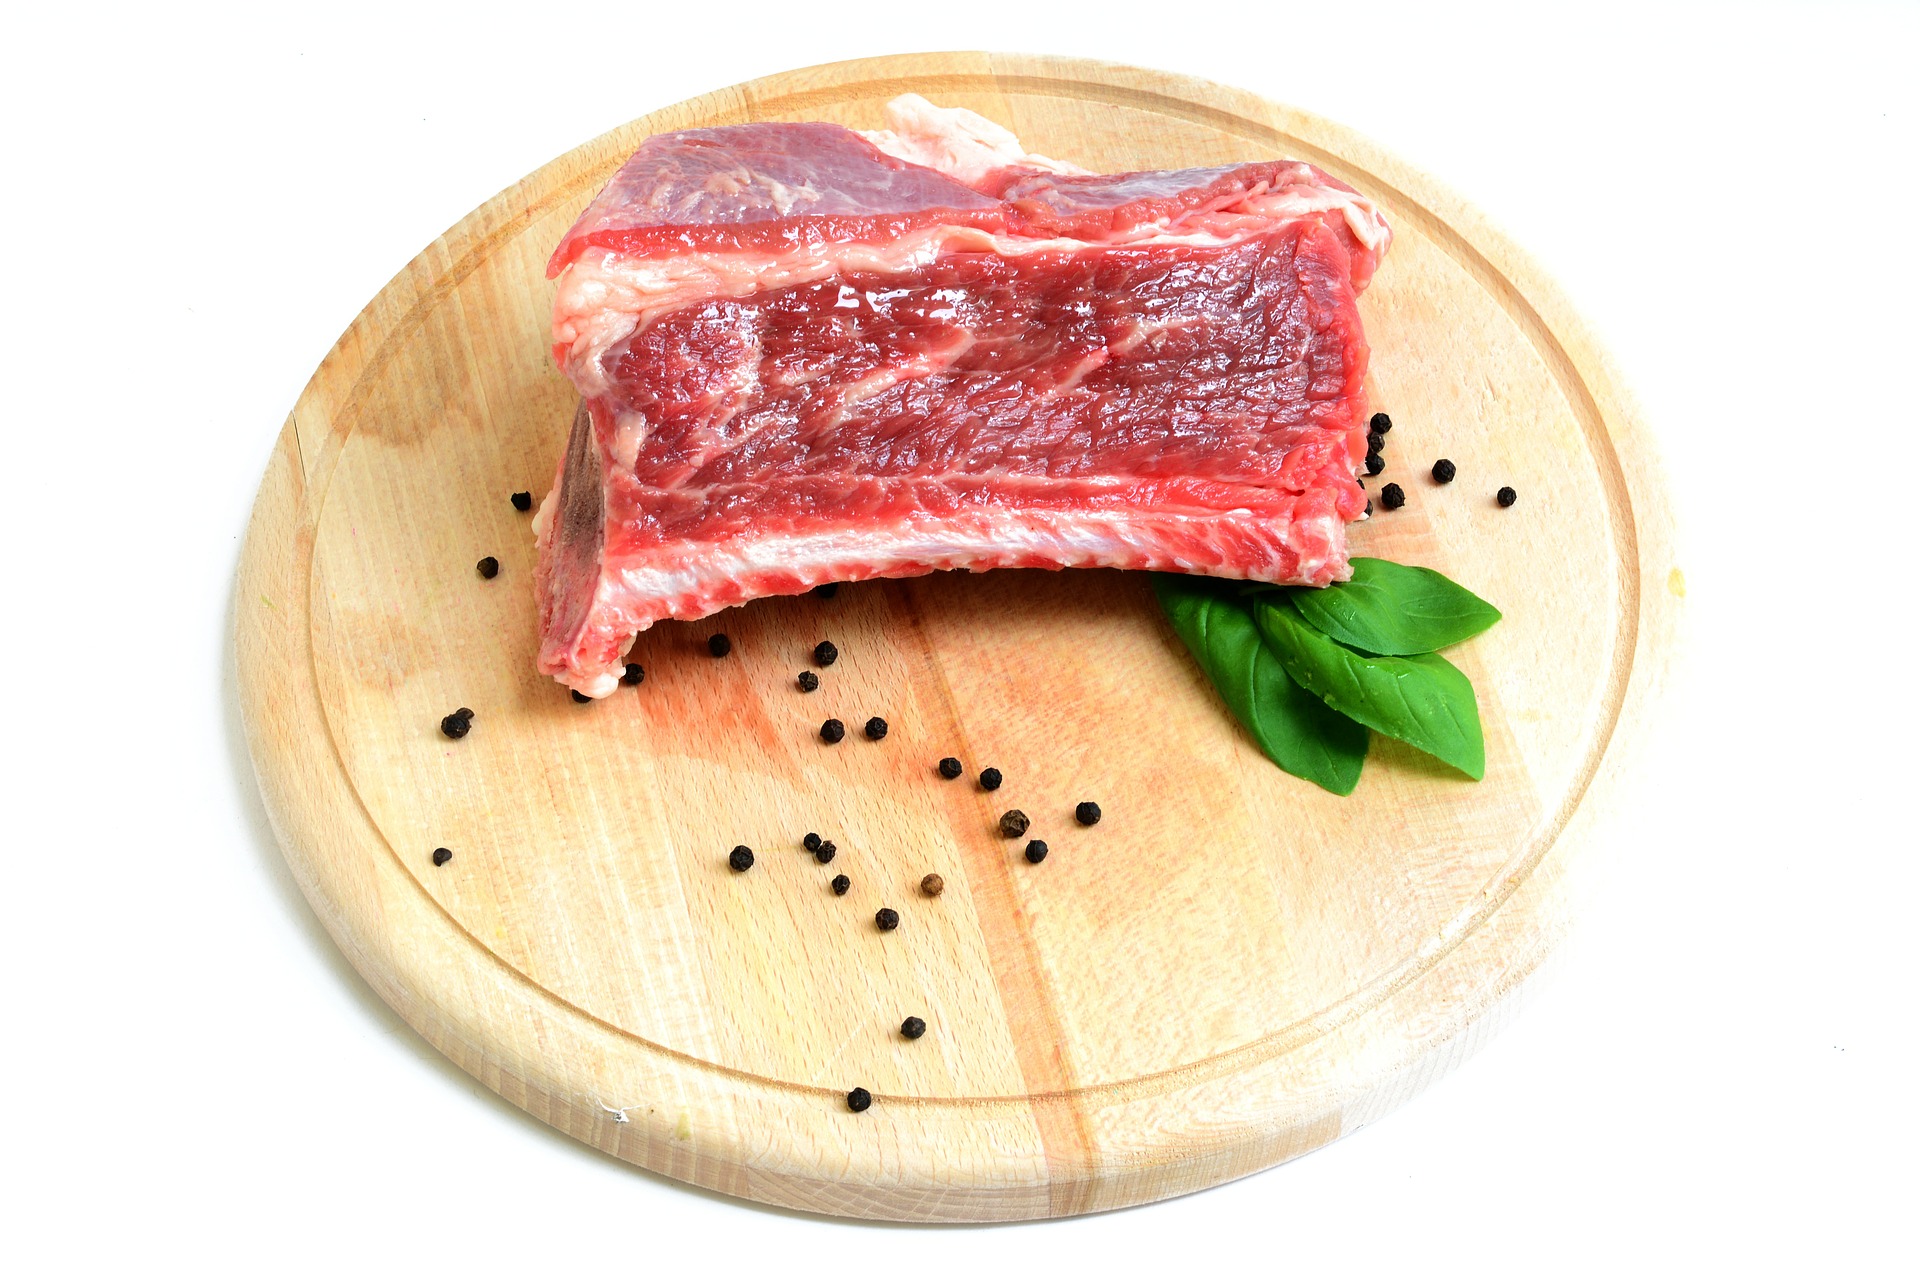 Mangiare carne scaduta: ecco cosa potrebbe accadere al nostro corpo